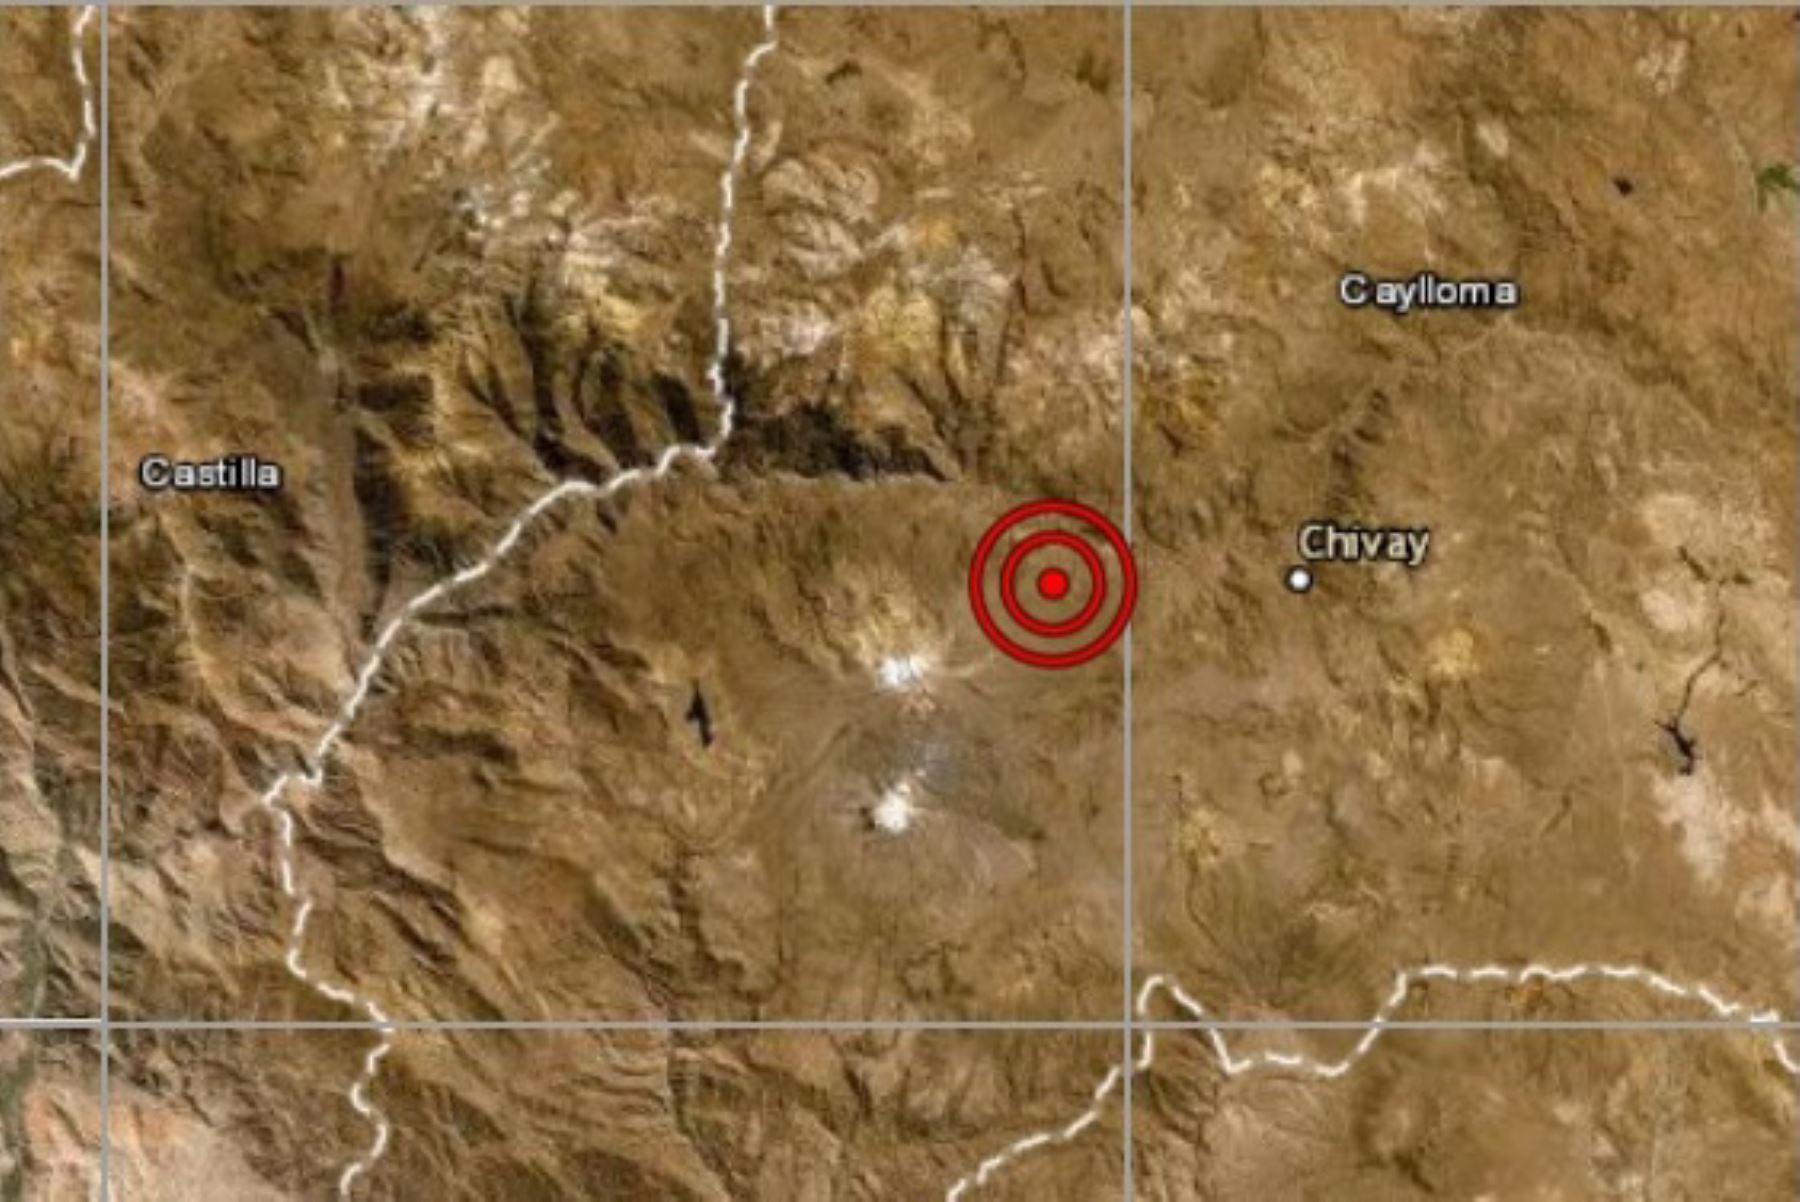 Arequipa: sismo de magnitud 3.8 remeció distrito de Maca esta tarde